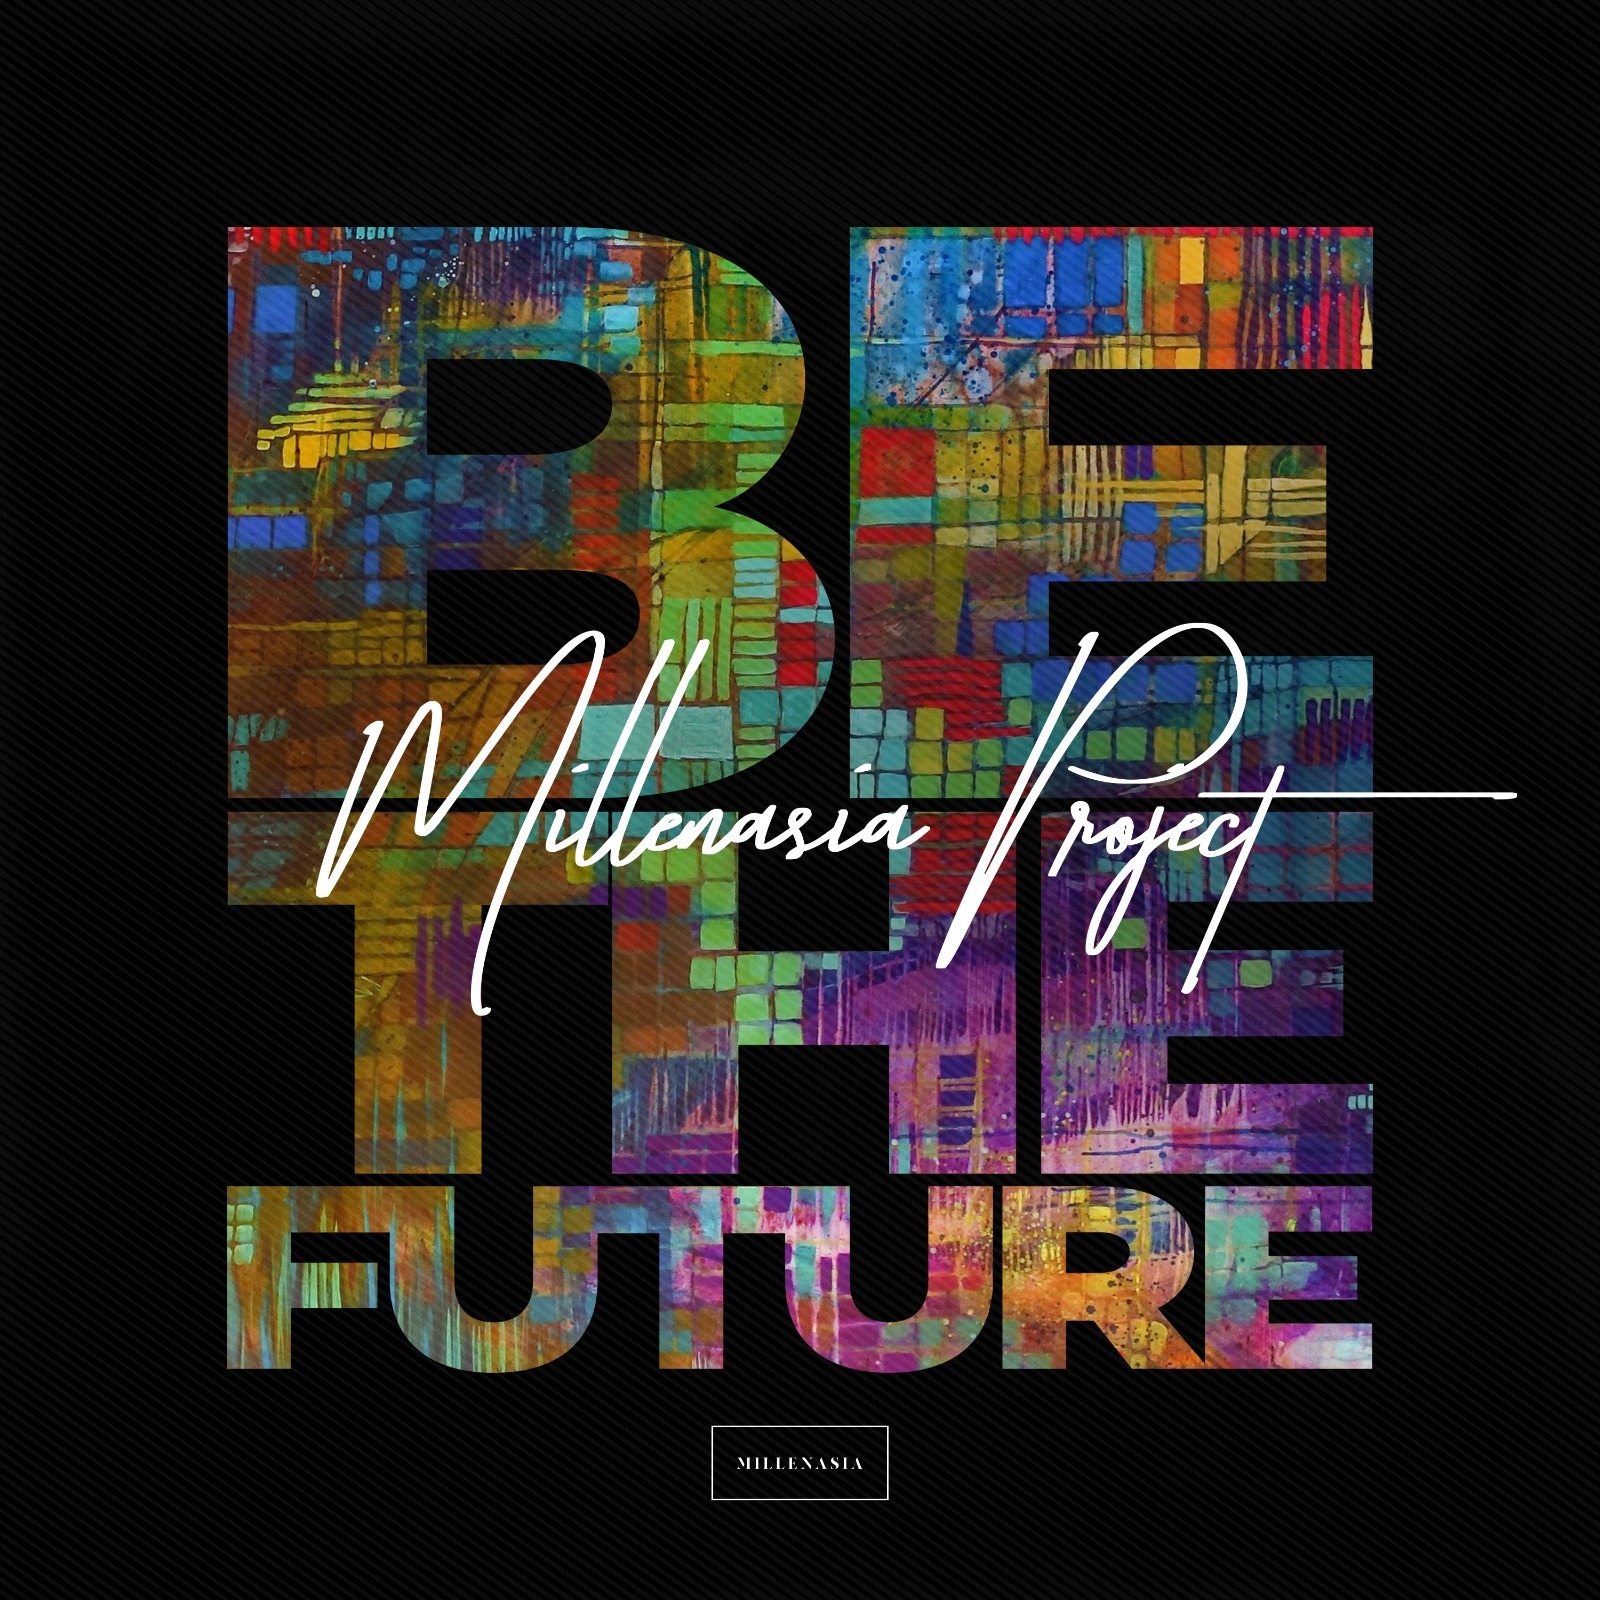 圖 Millenasia Project 'Be The Future' Music Video